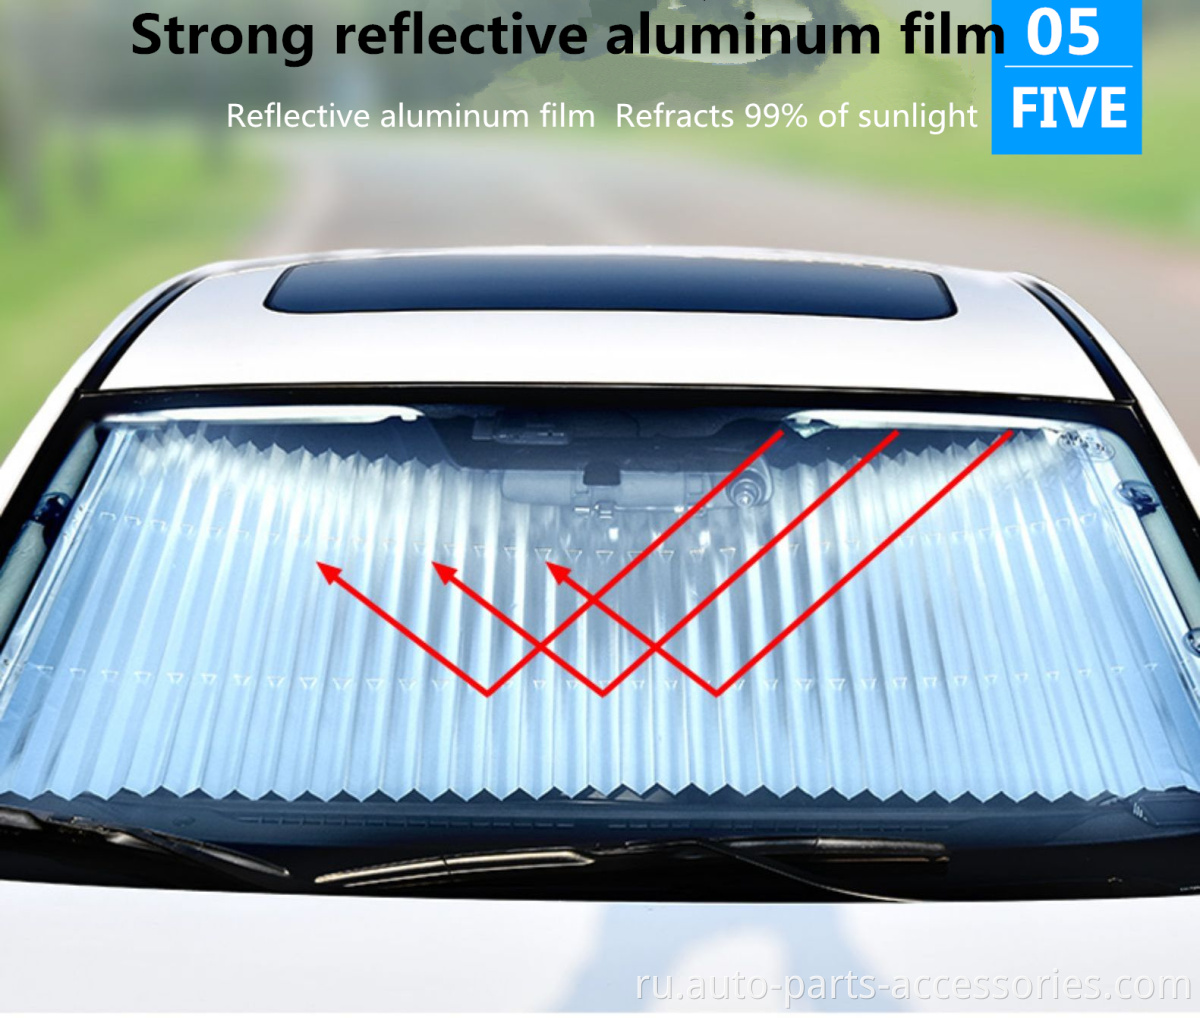 2020 г. Индивидуальные ультрафиолетовые лучи Защита Теплоизоляция Солнечная камервановая козырька солнца для автомобиля